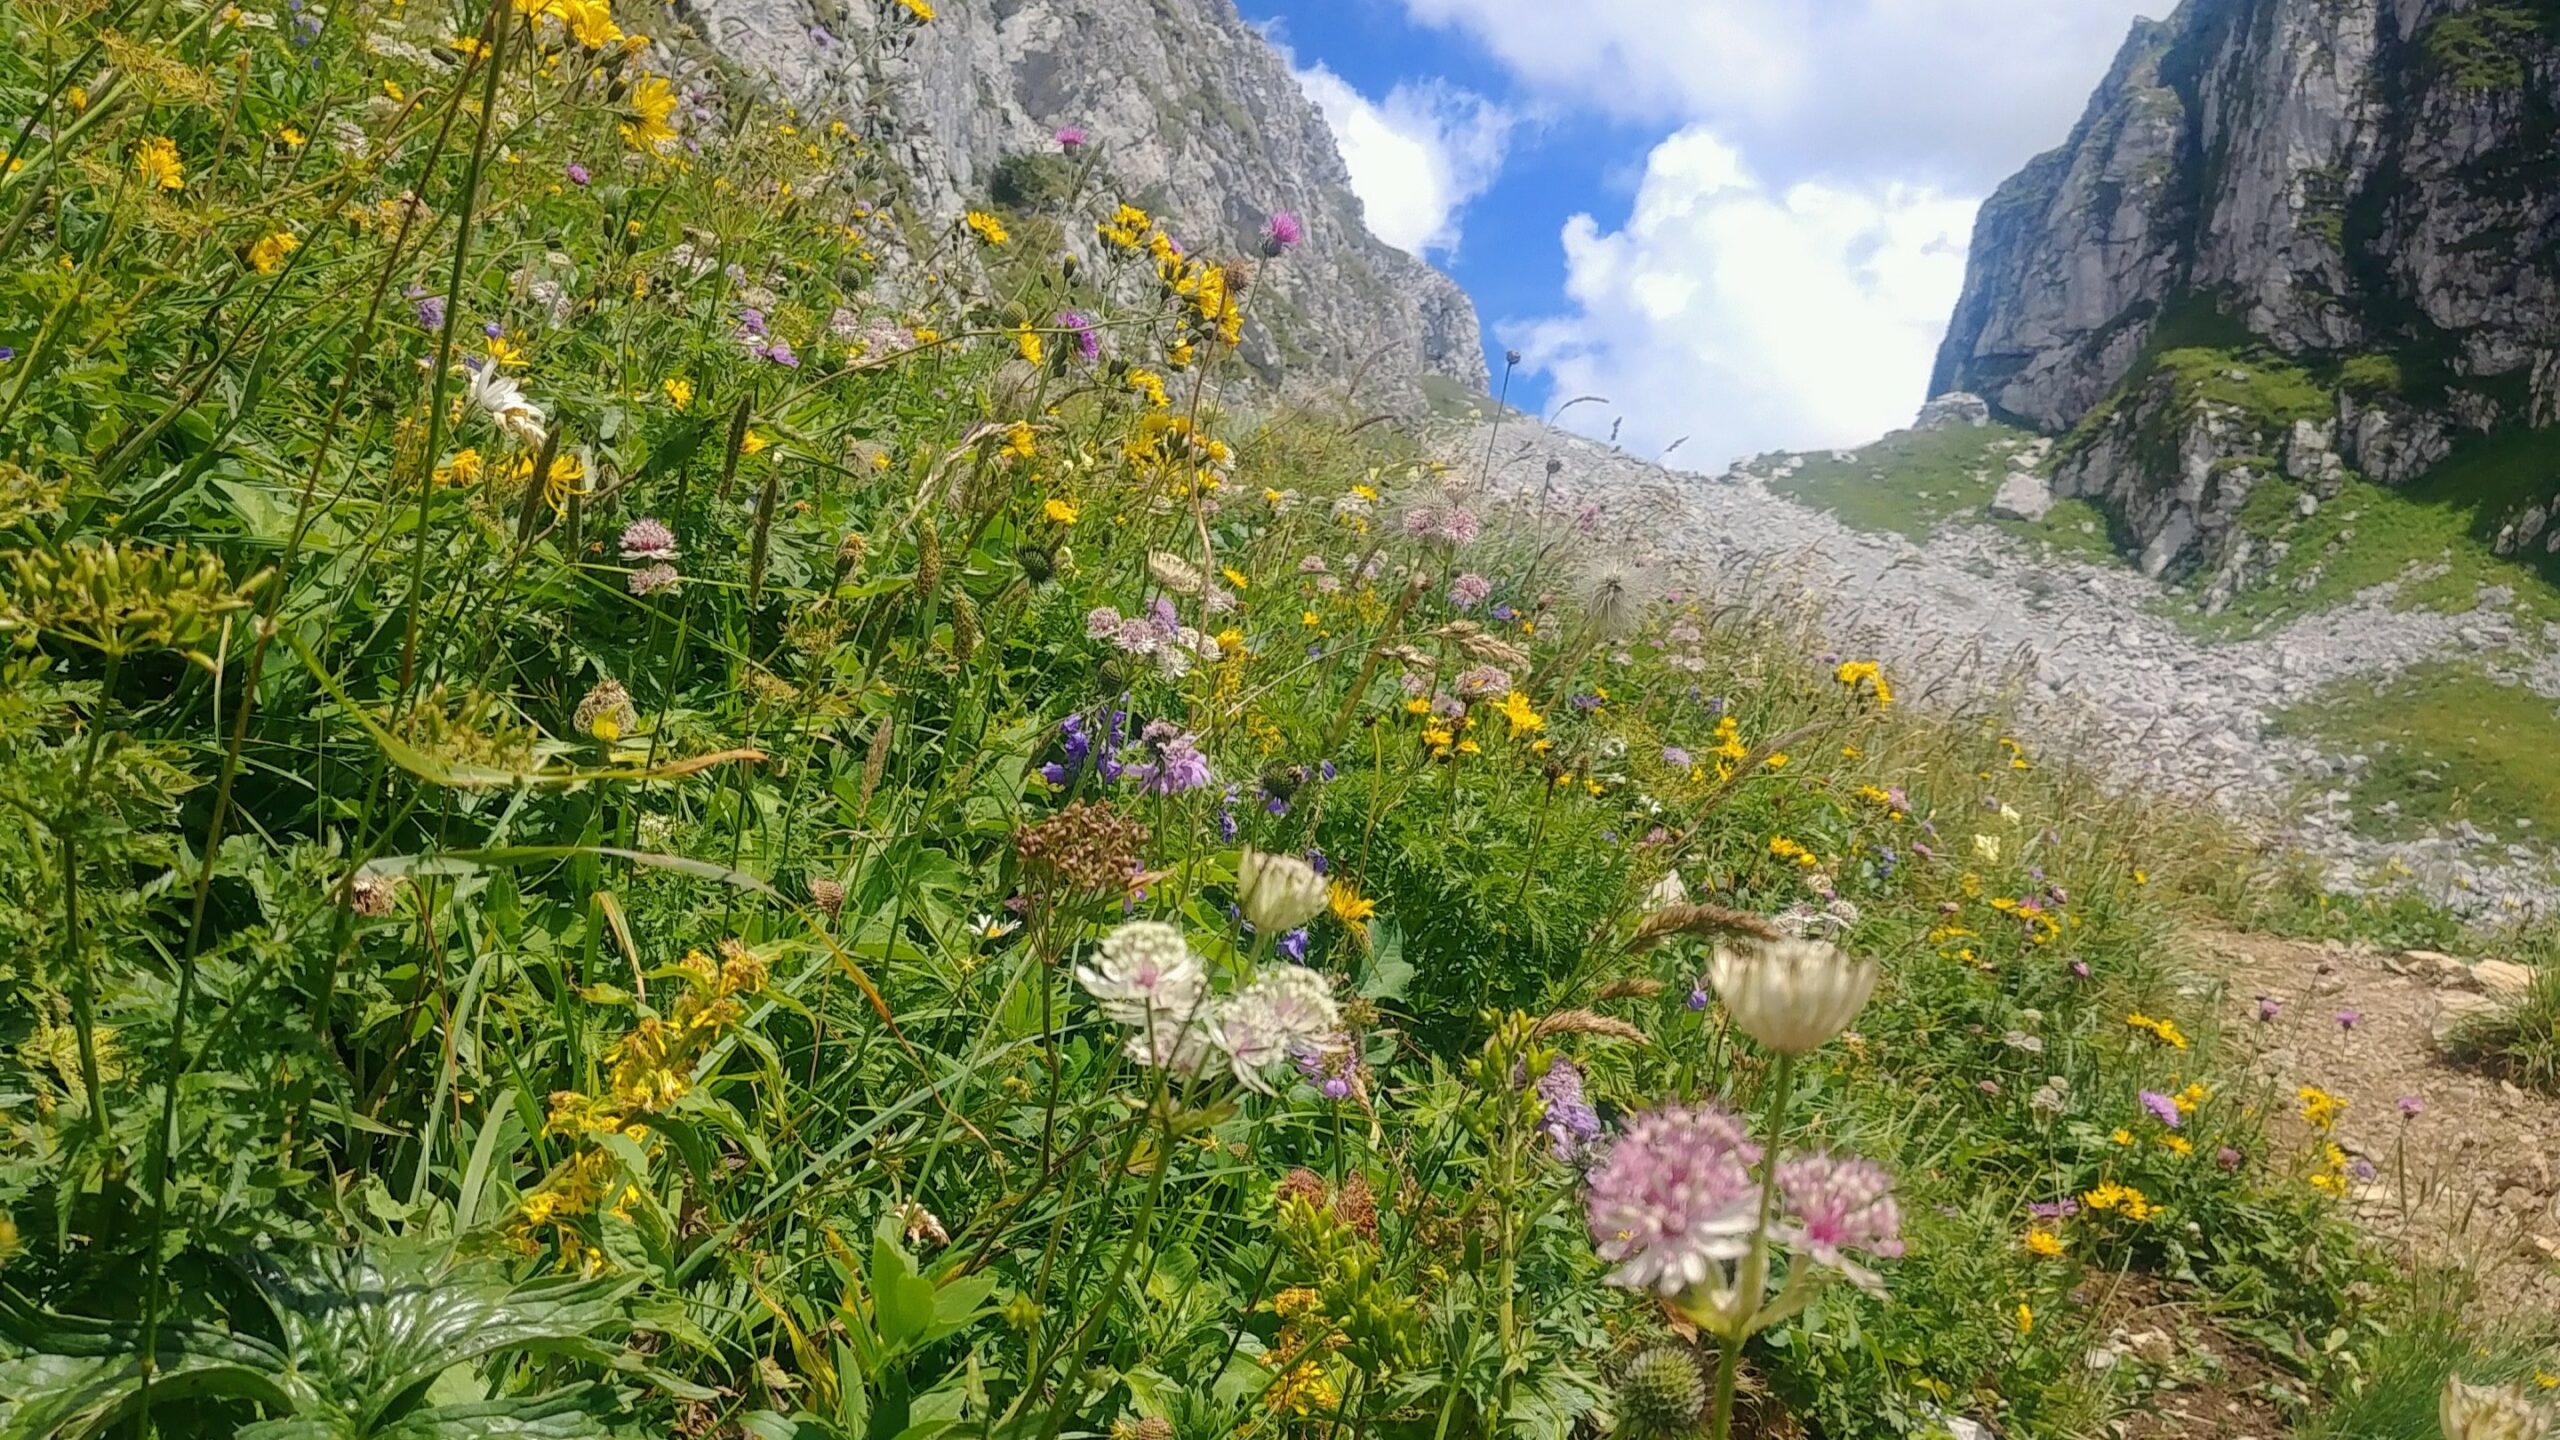 Bernex Evian idée randonnée facile modérée Alpes Haute-Savoie